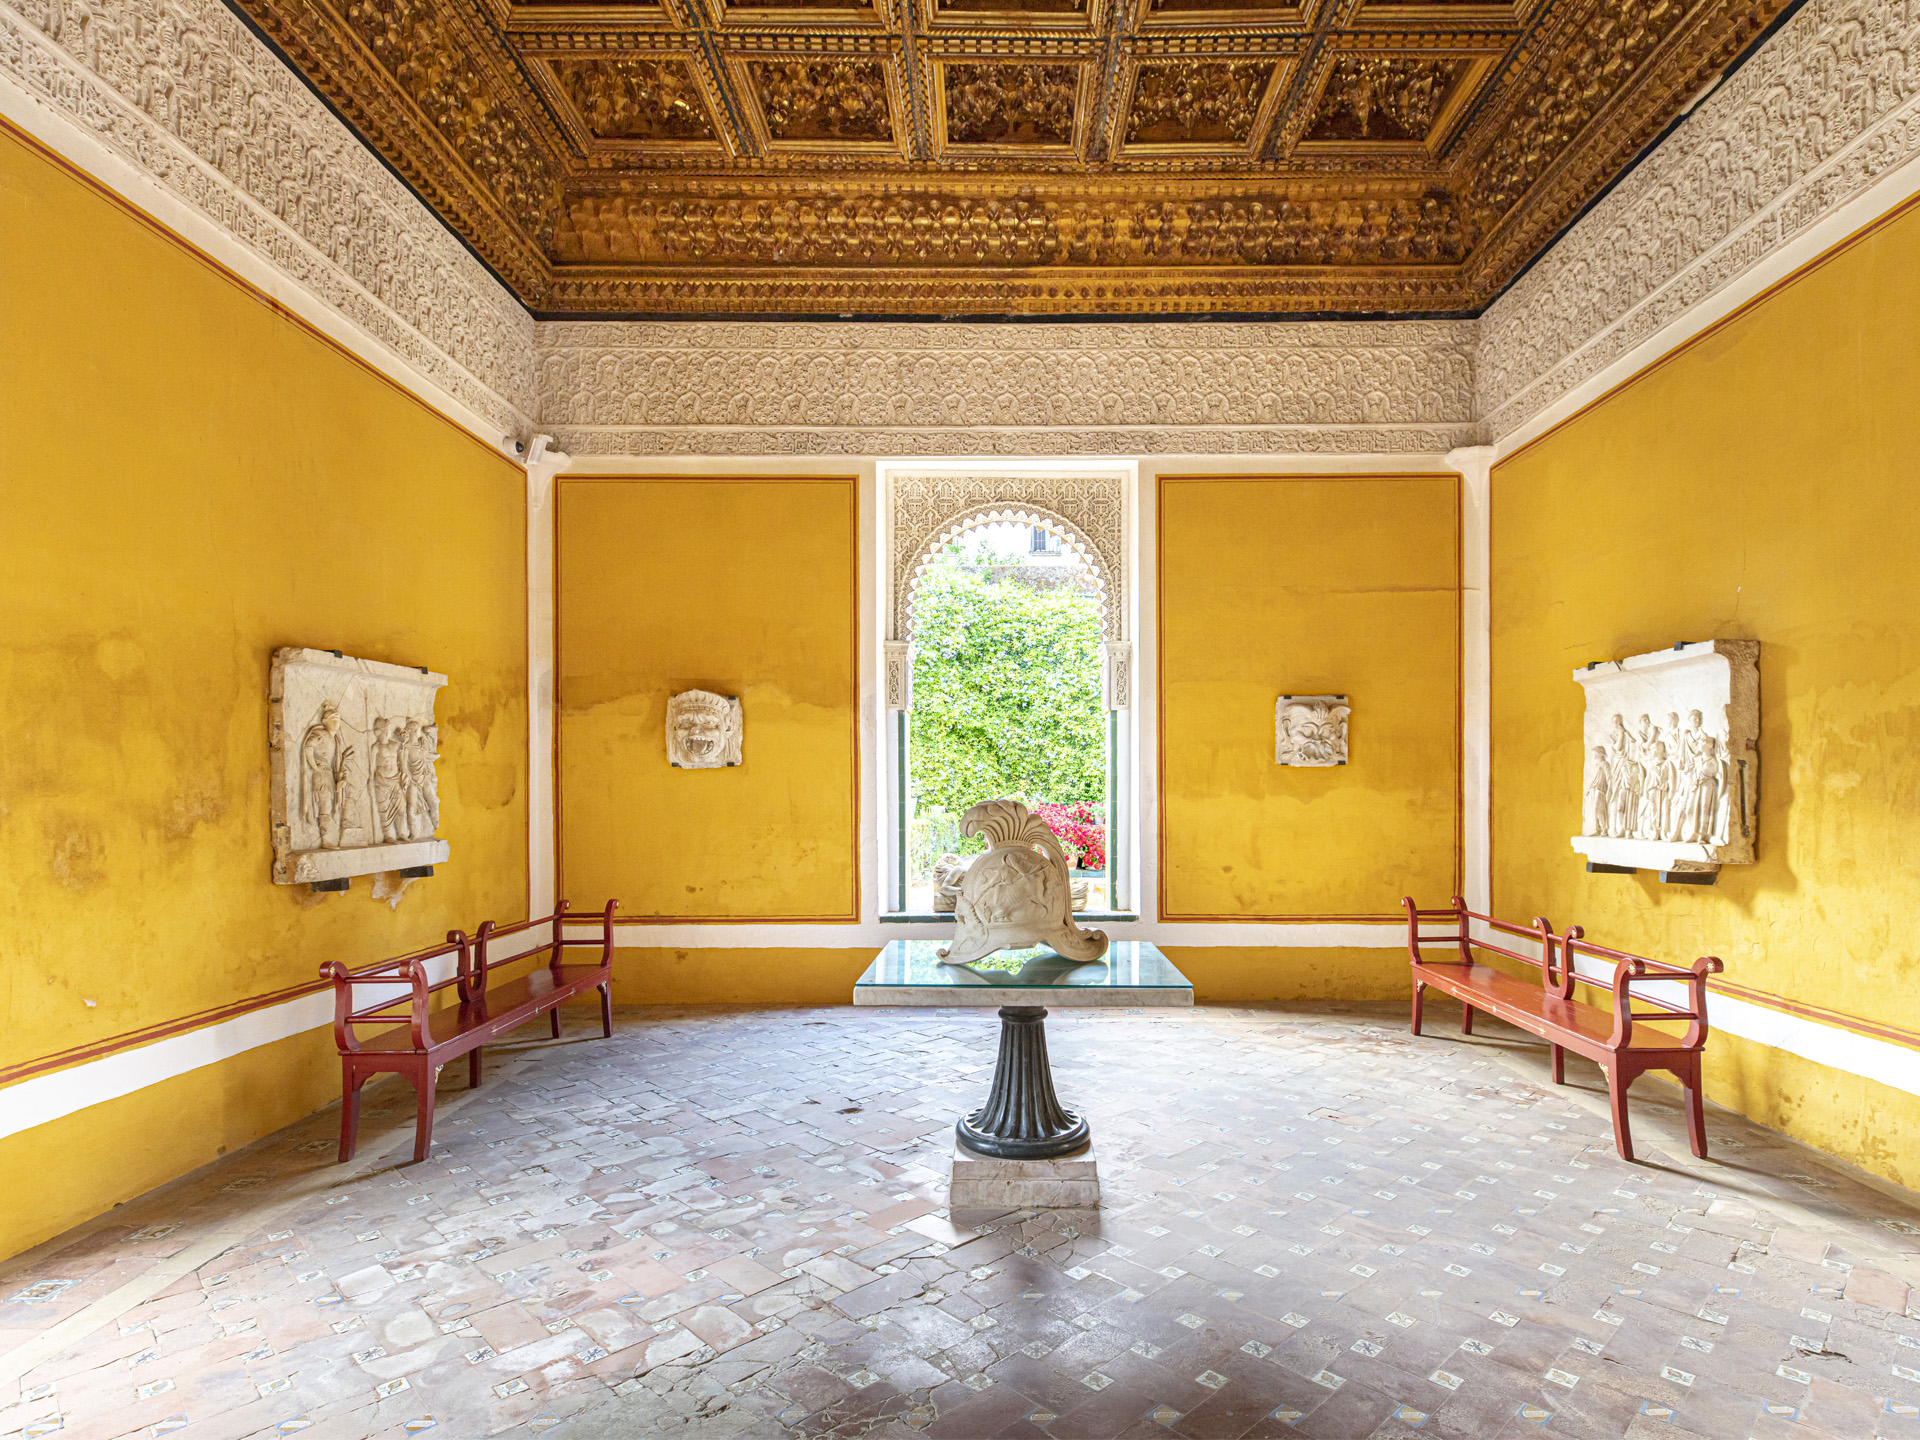 Chambre dorée, Casa de Pilatos. Séville ©Celia Rogge